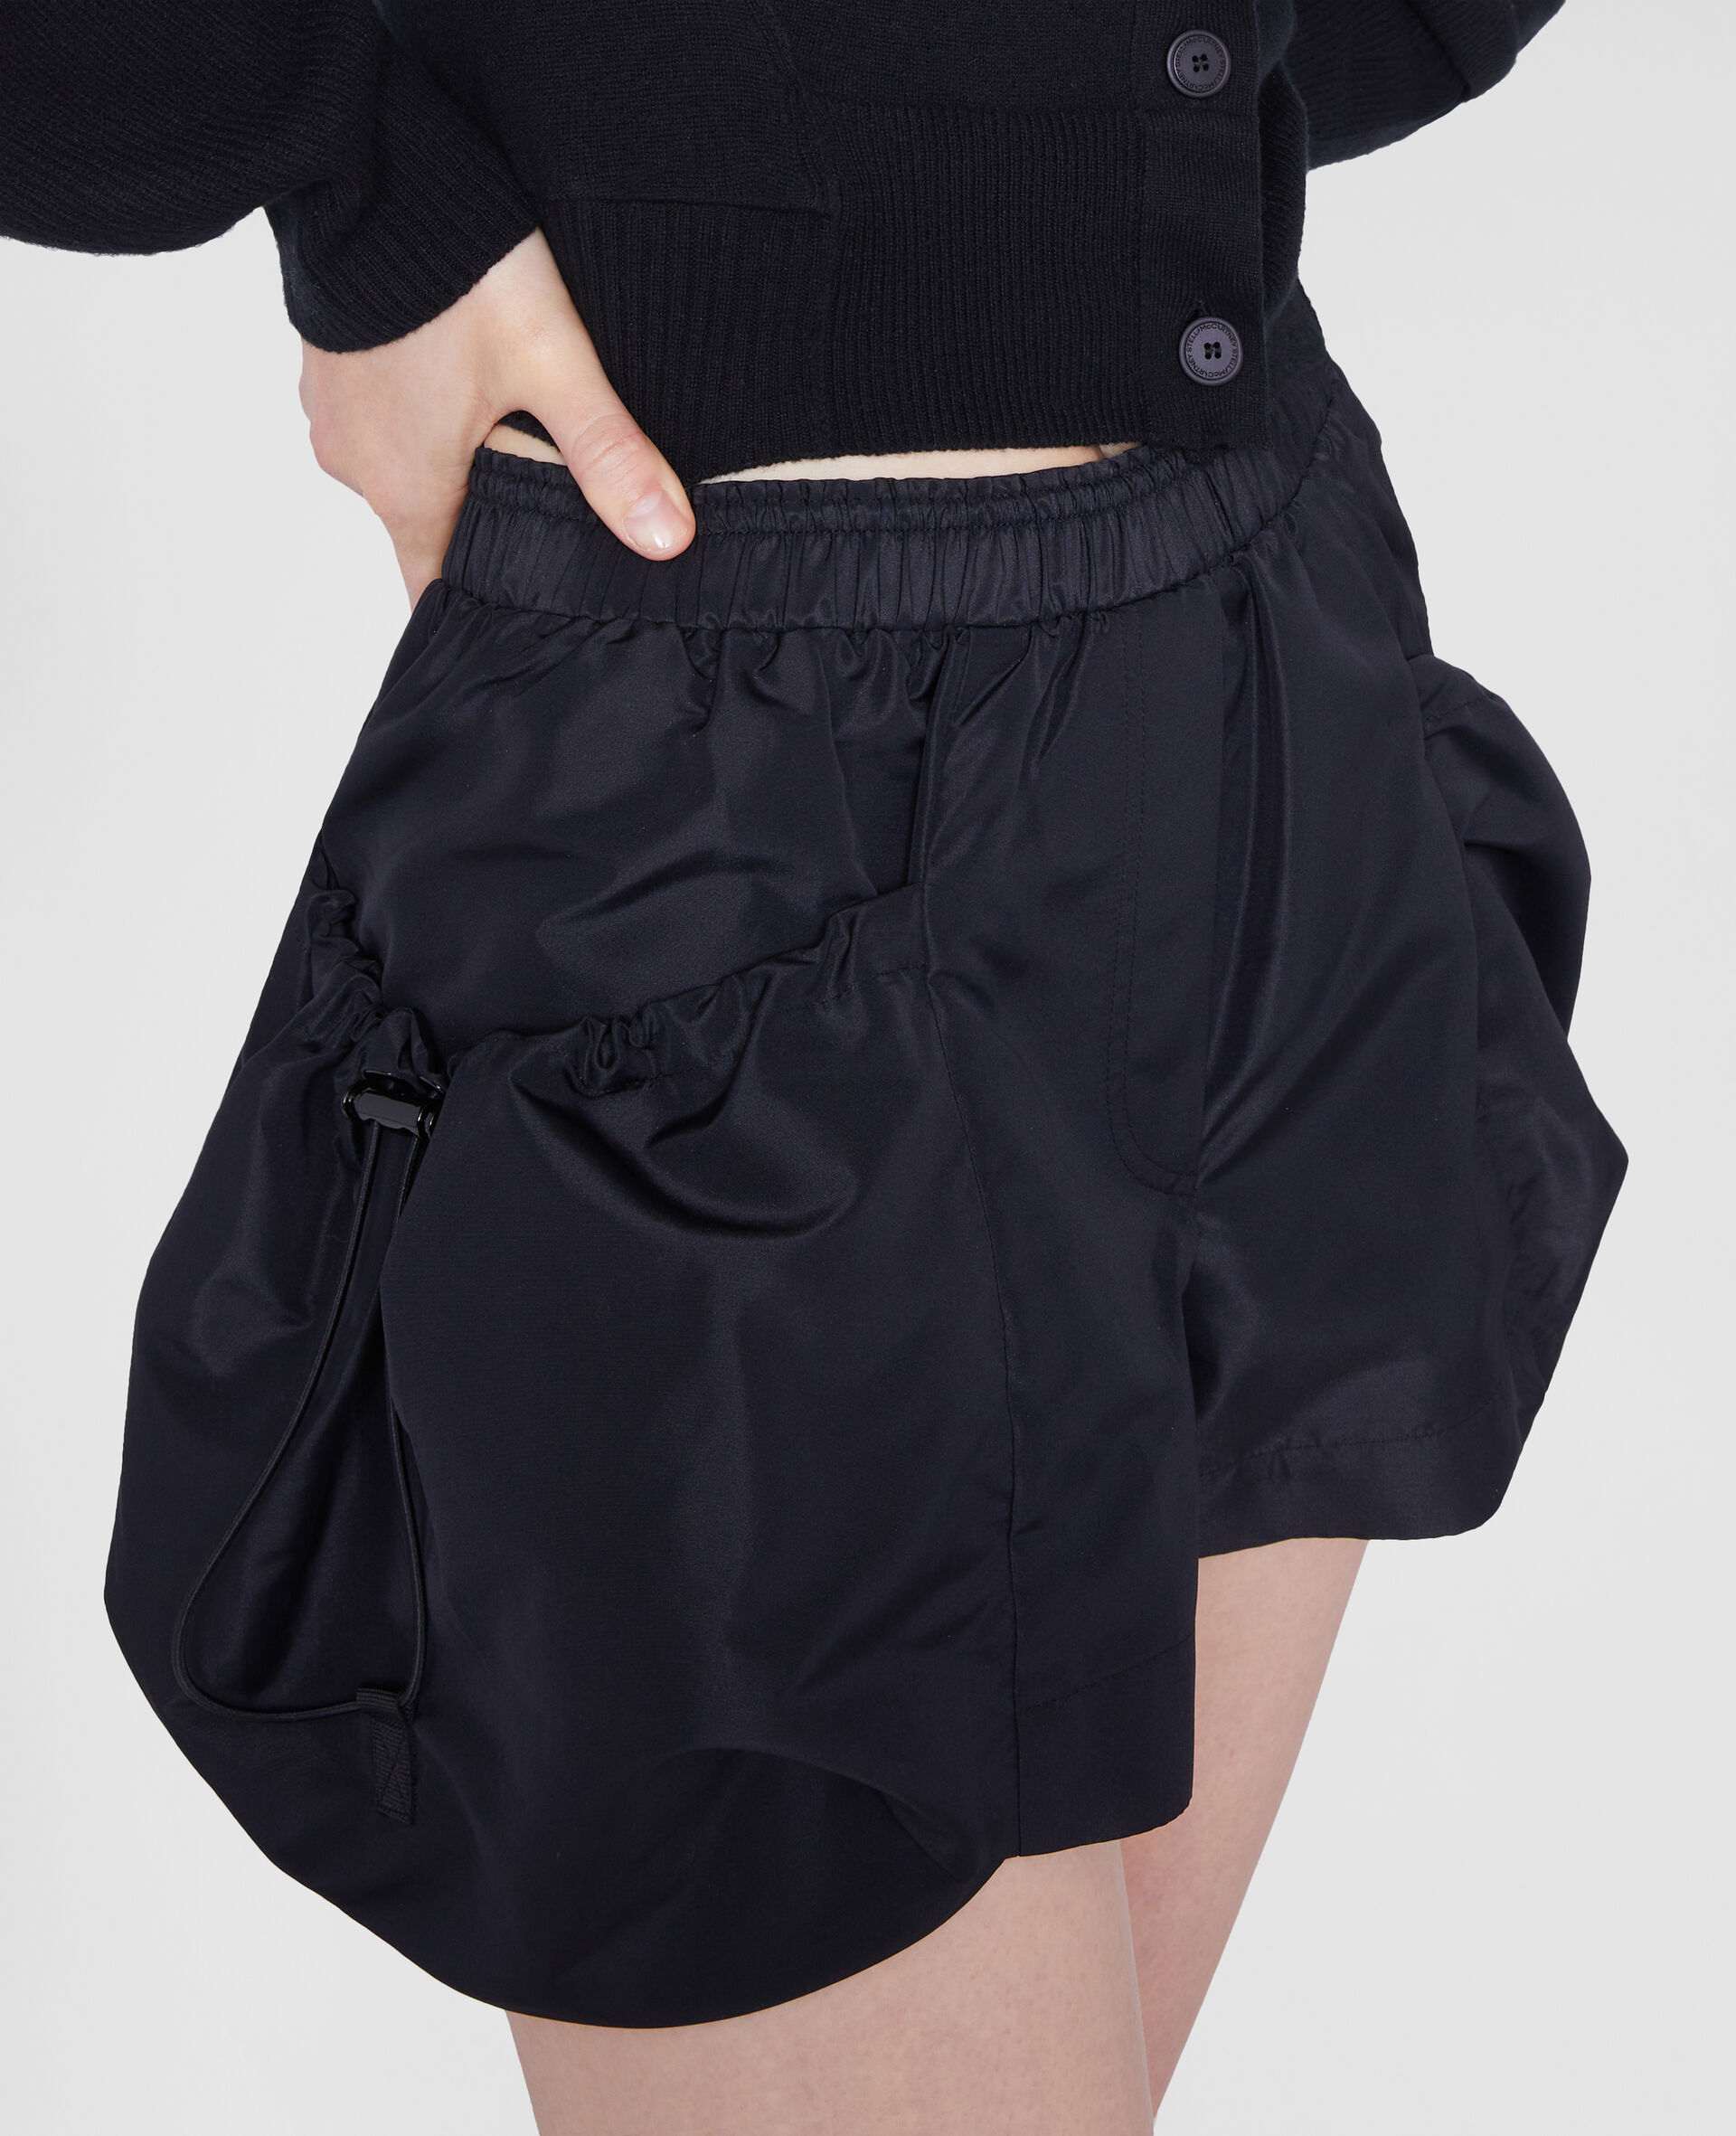 Baggy Pocket Shorts-Black-large image number 3